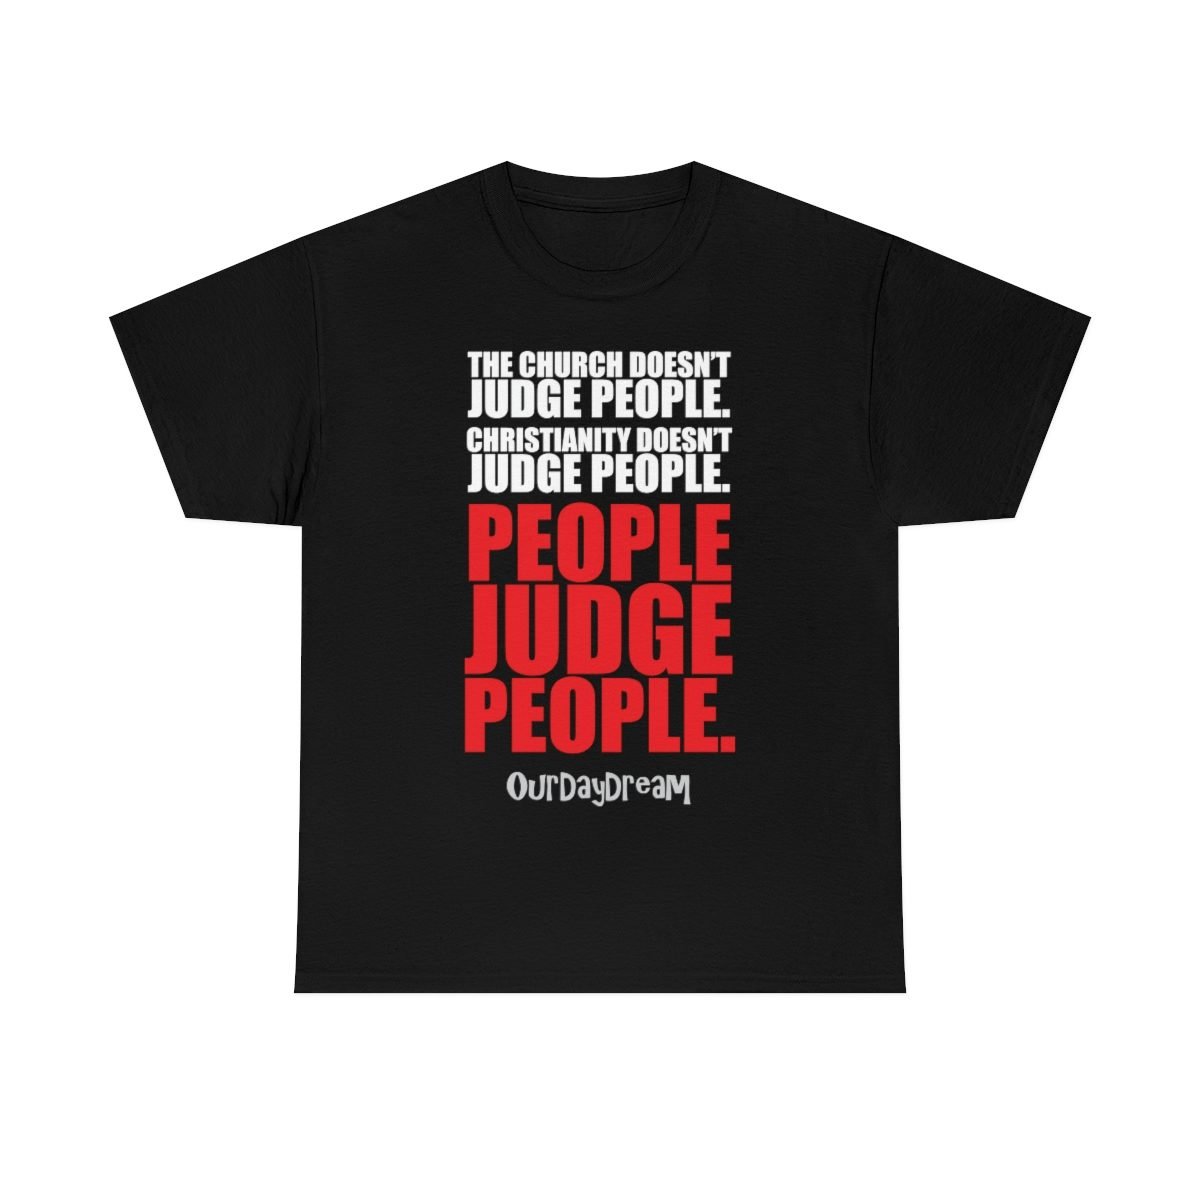 OurDayDream – People Judge People Short Sleeve Tshirt